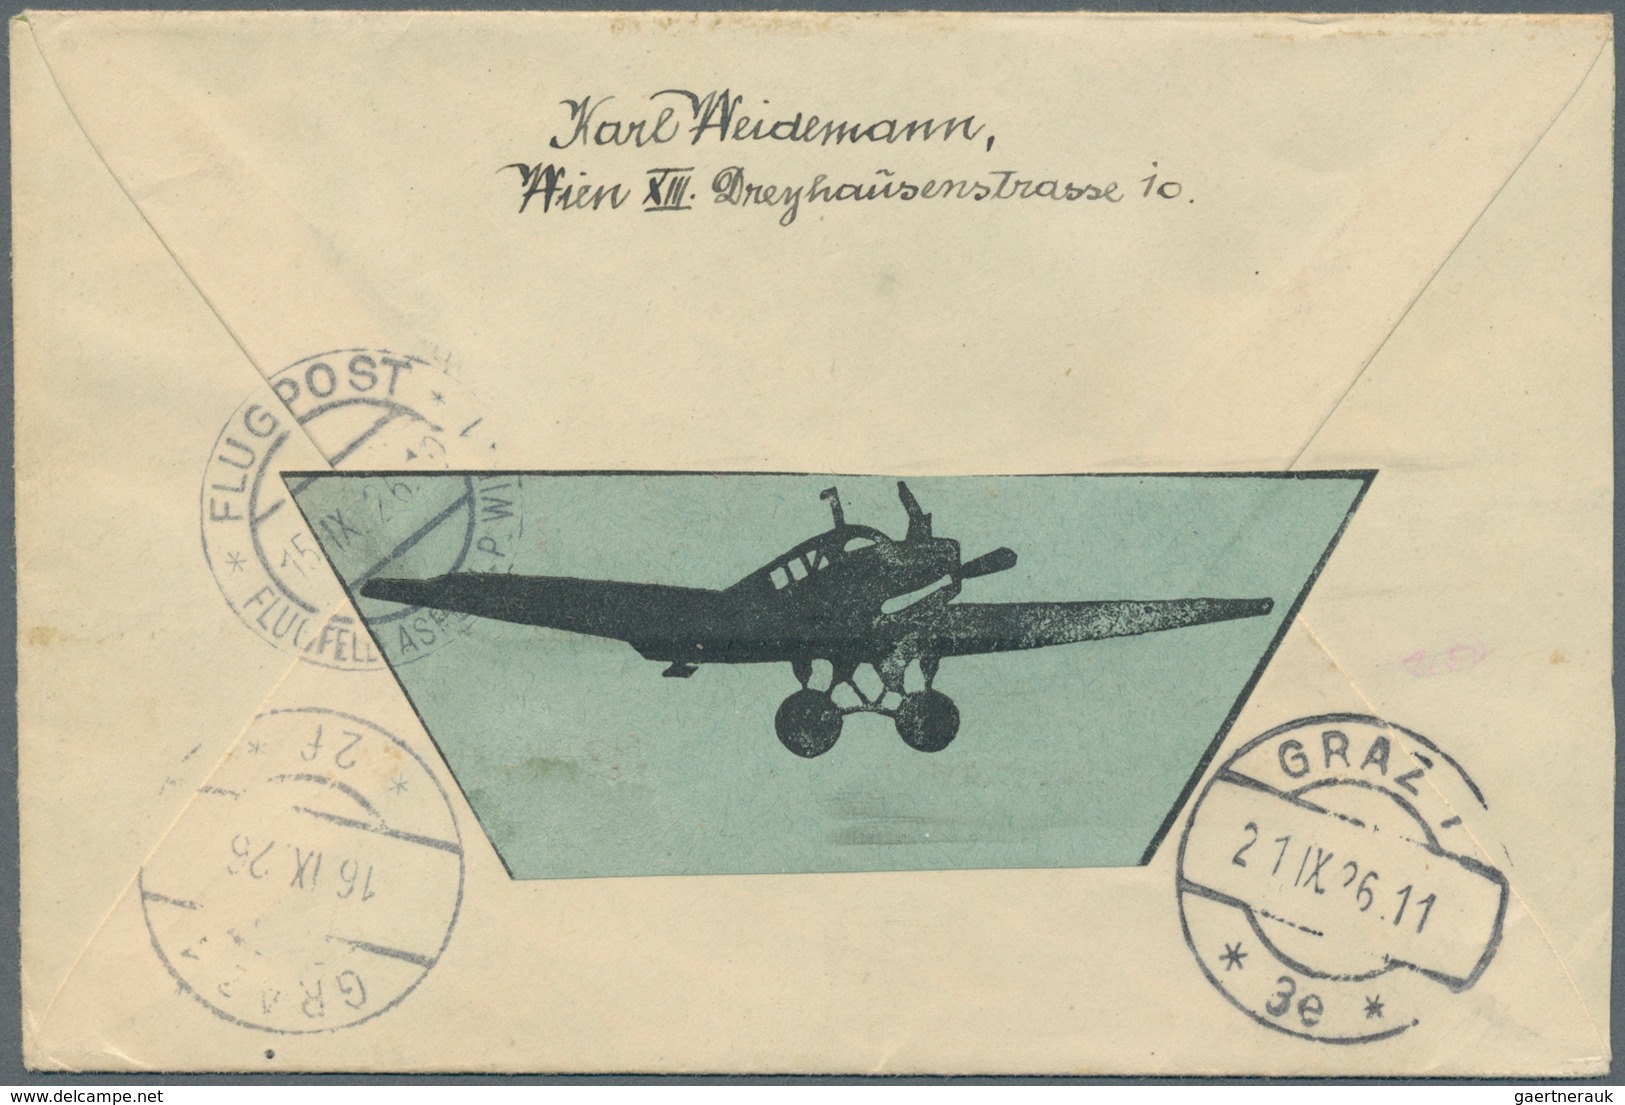 Österreich: 1892/1940, Österreich, Schweiz und Liechtenstein, Partie von zehn Briefen/Karten, dabei